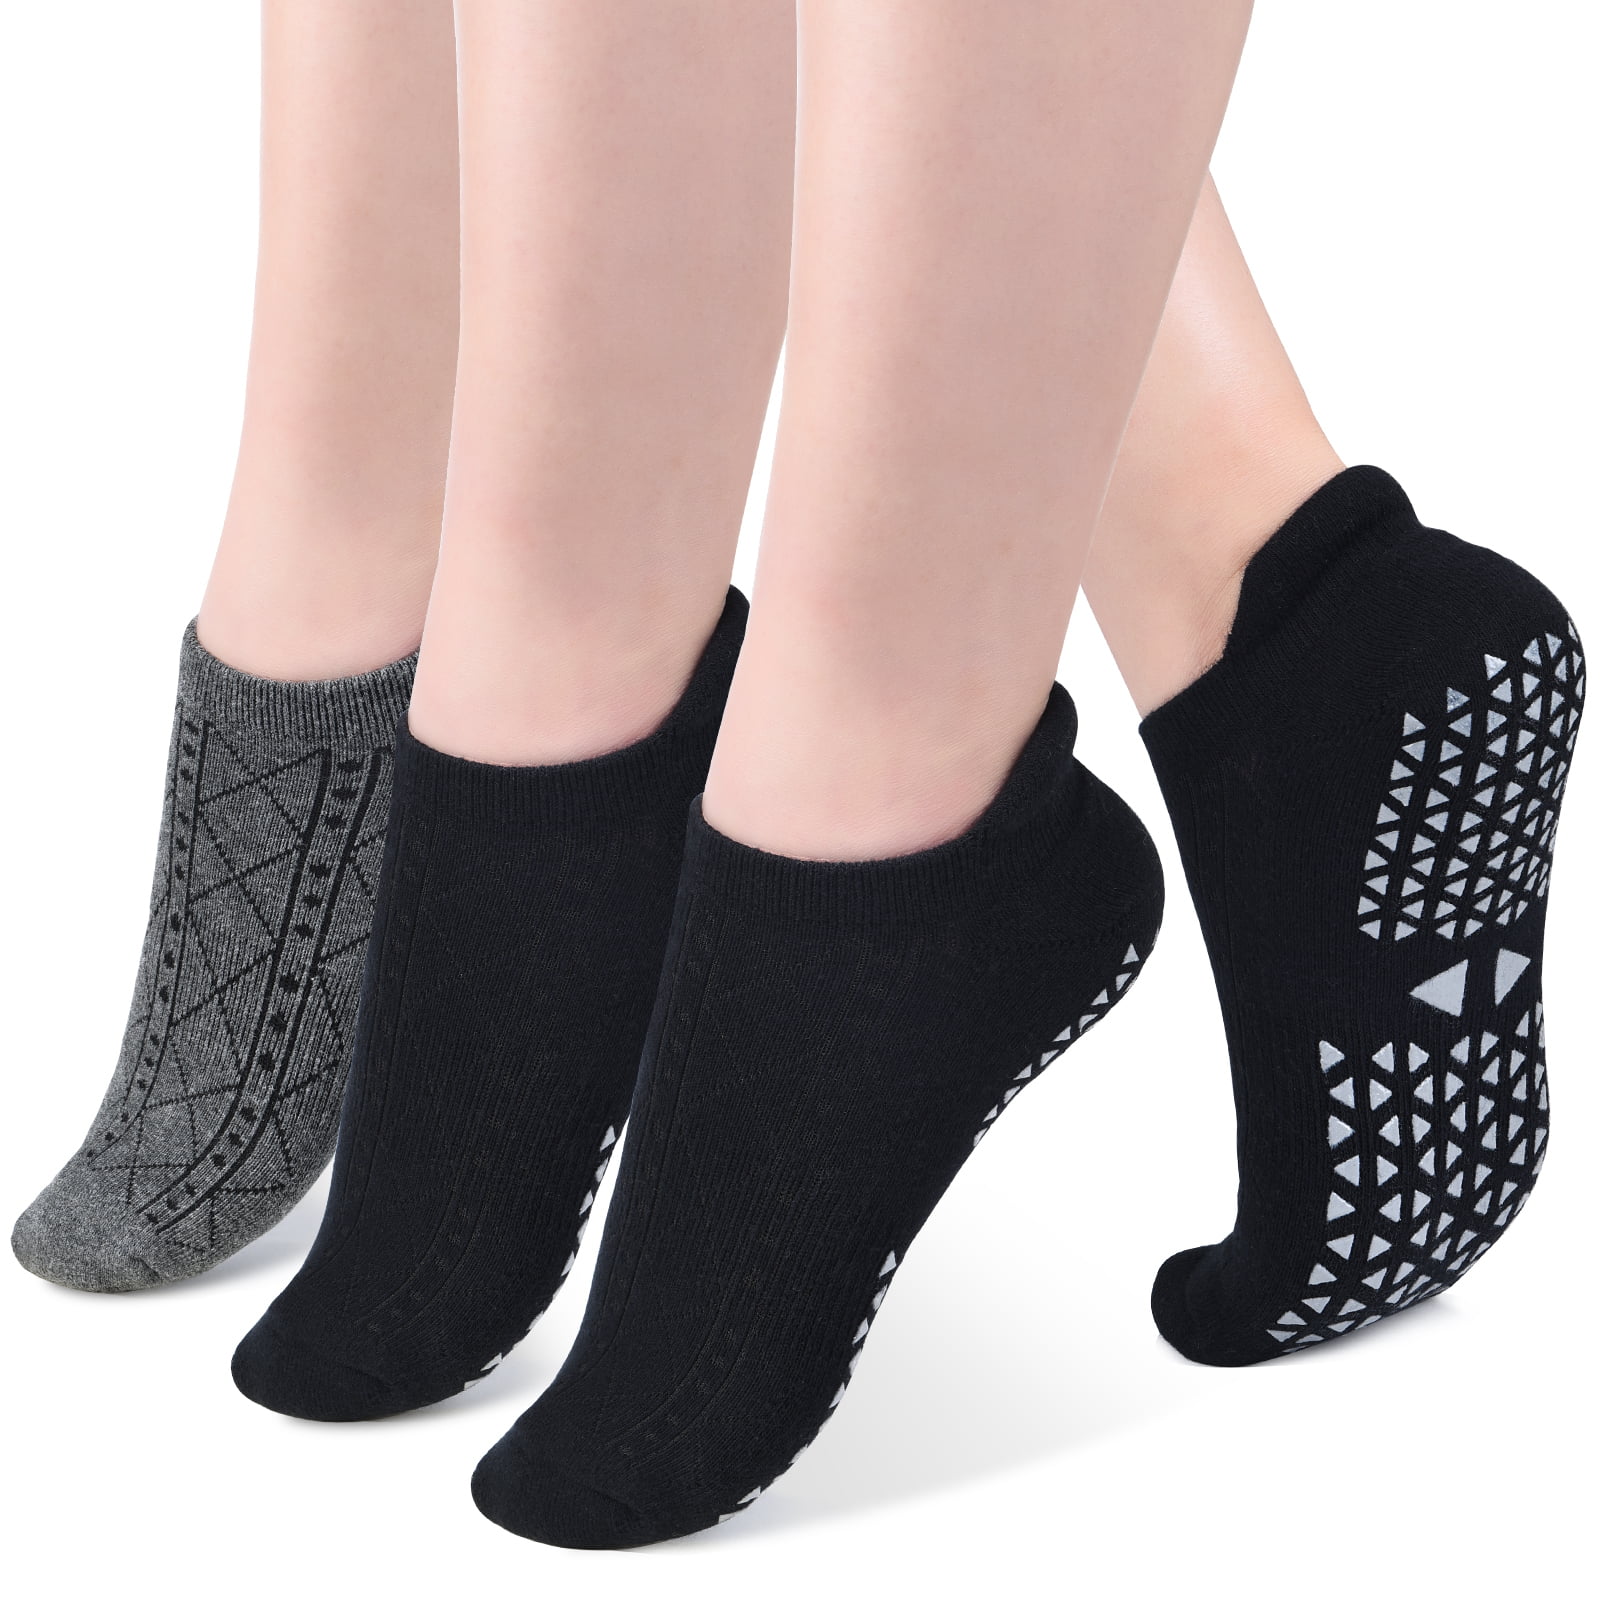 Yoga Socks Non Slip Ballet Sports Gym Exercise Grip Cotton Pilates For Women UK 